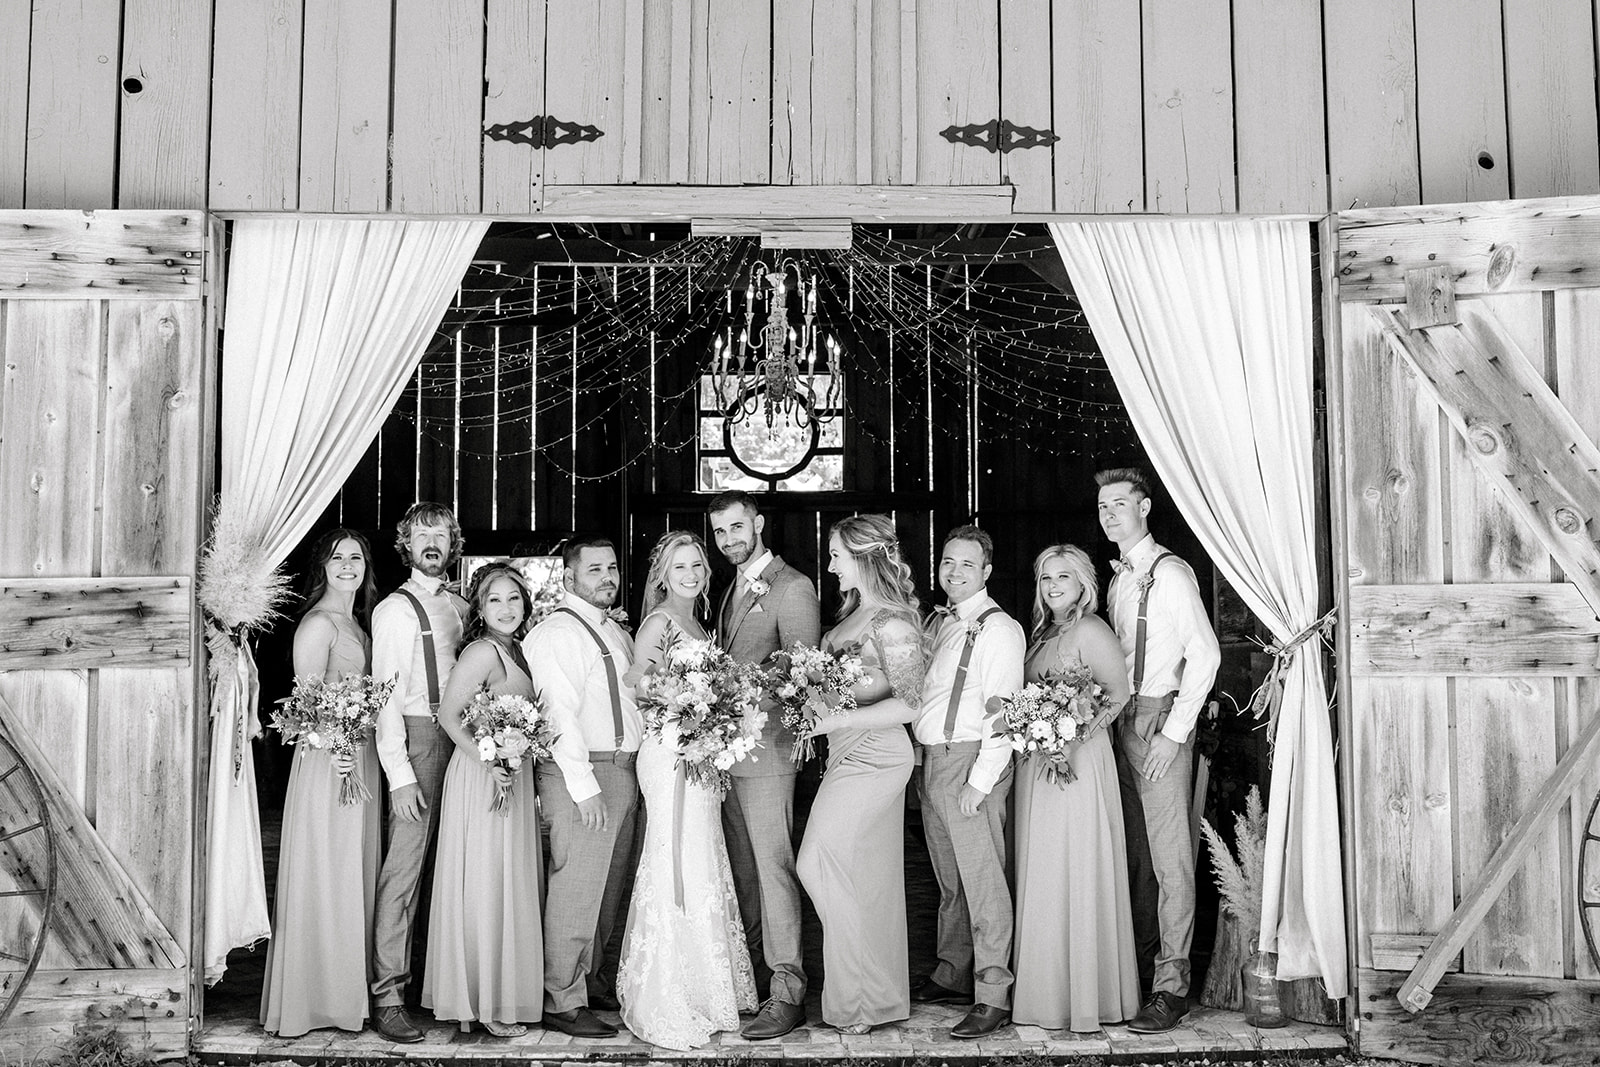 Sonora CA wedding party barn